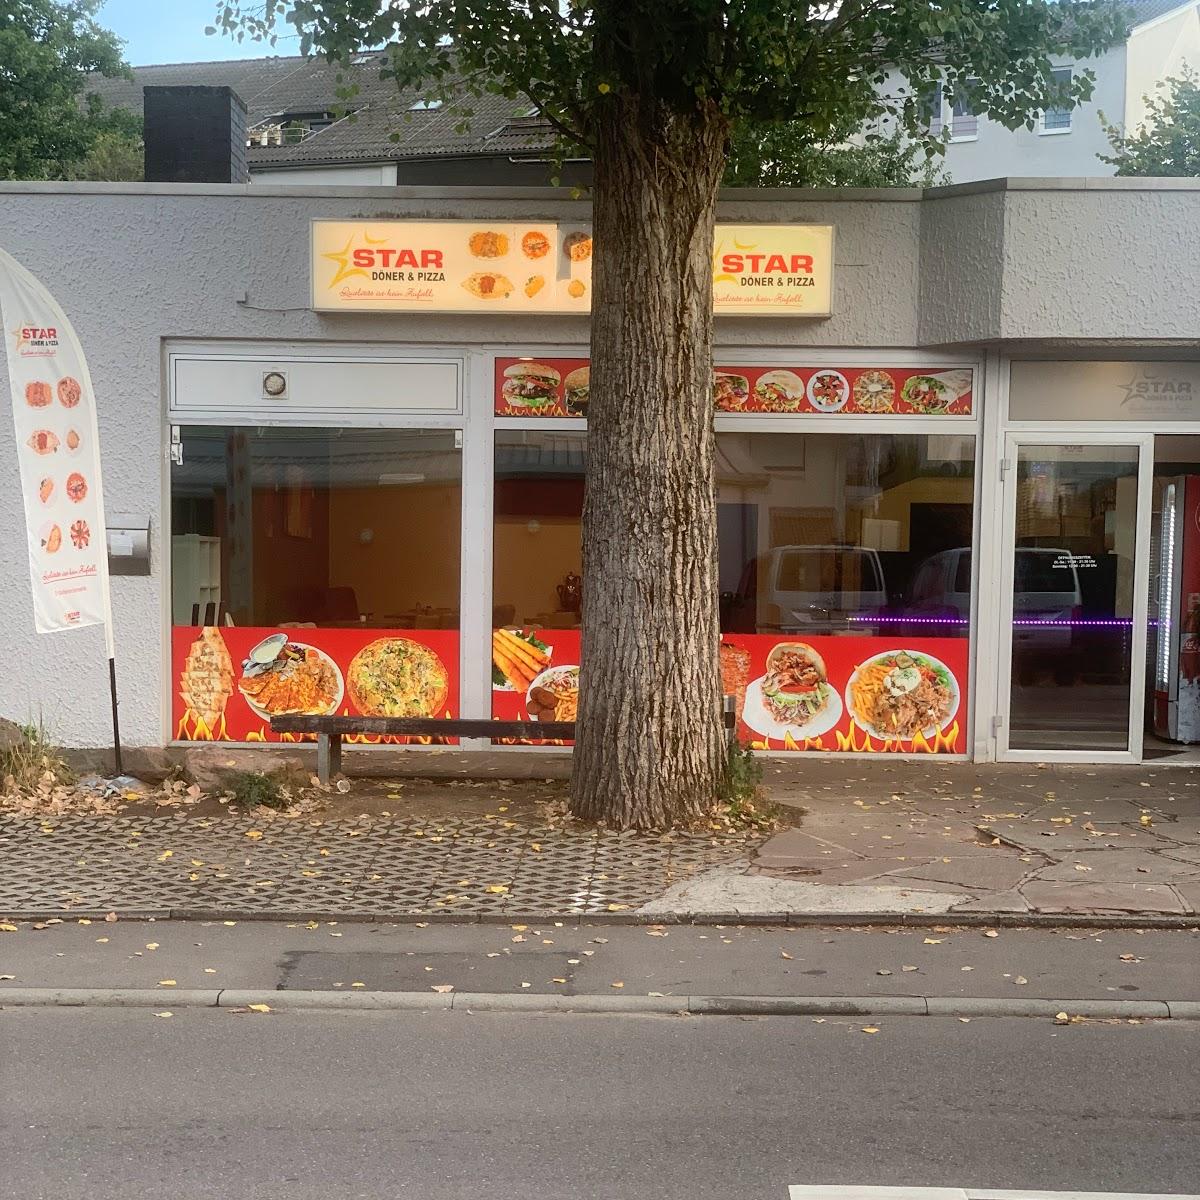 Restaurant "Star Döner und Pizza" in Bammental